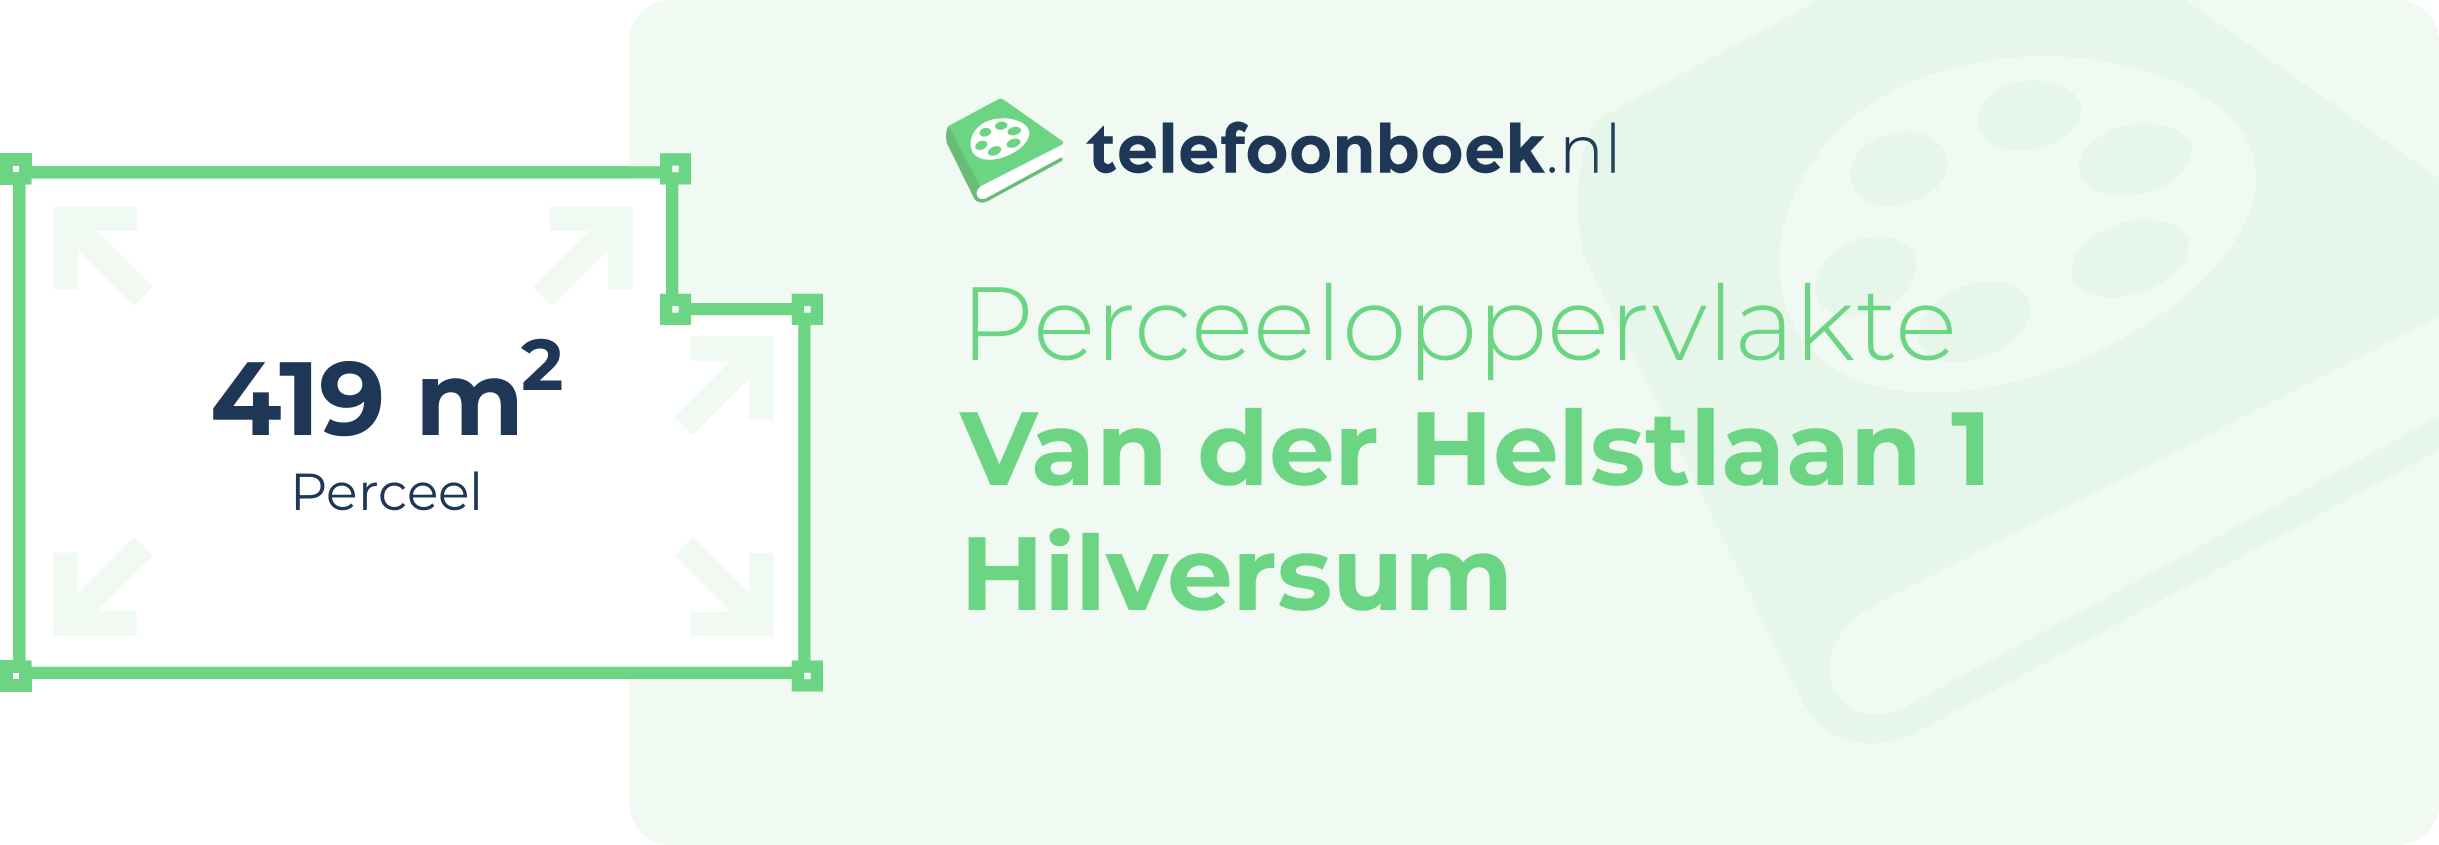 Perceeloppervlakte Van Der Helstlaan 1 Hilversum